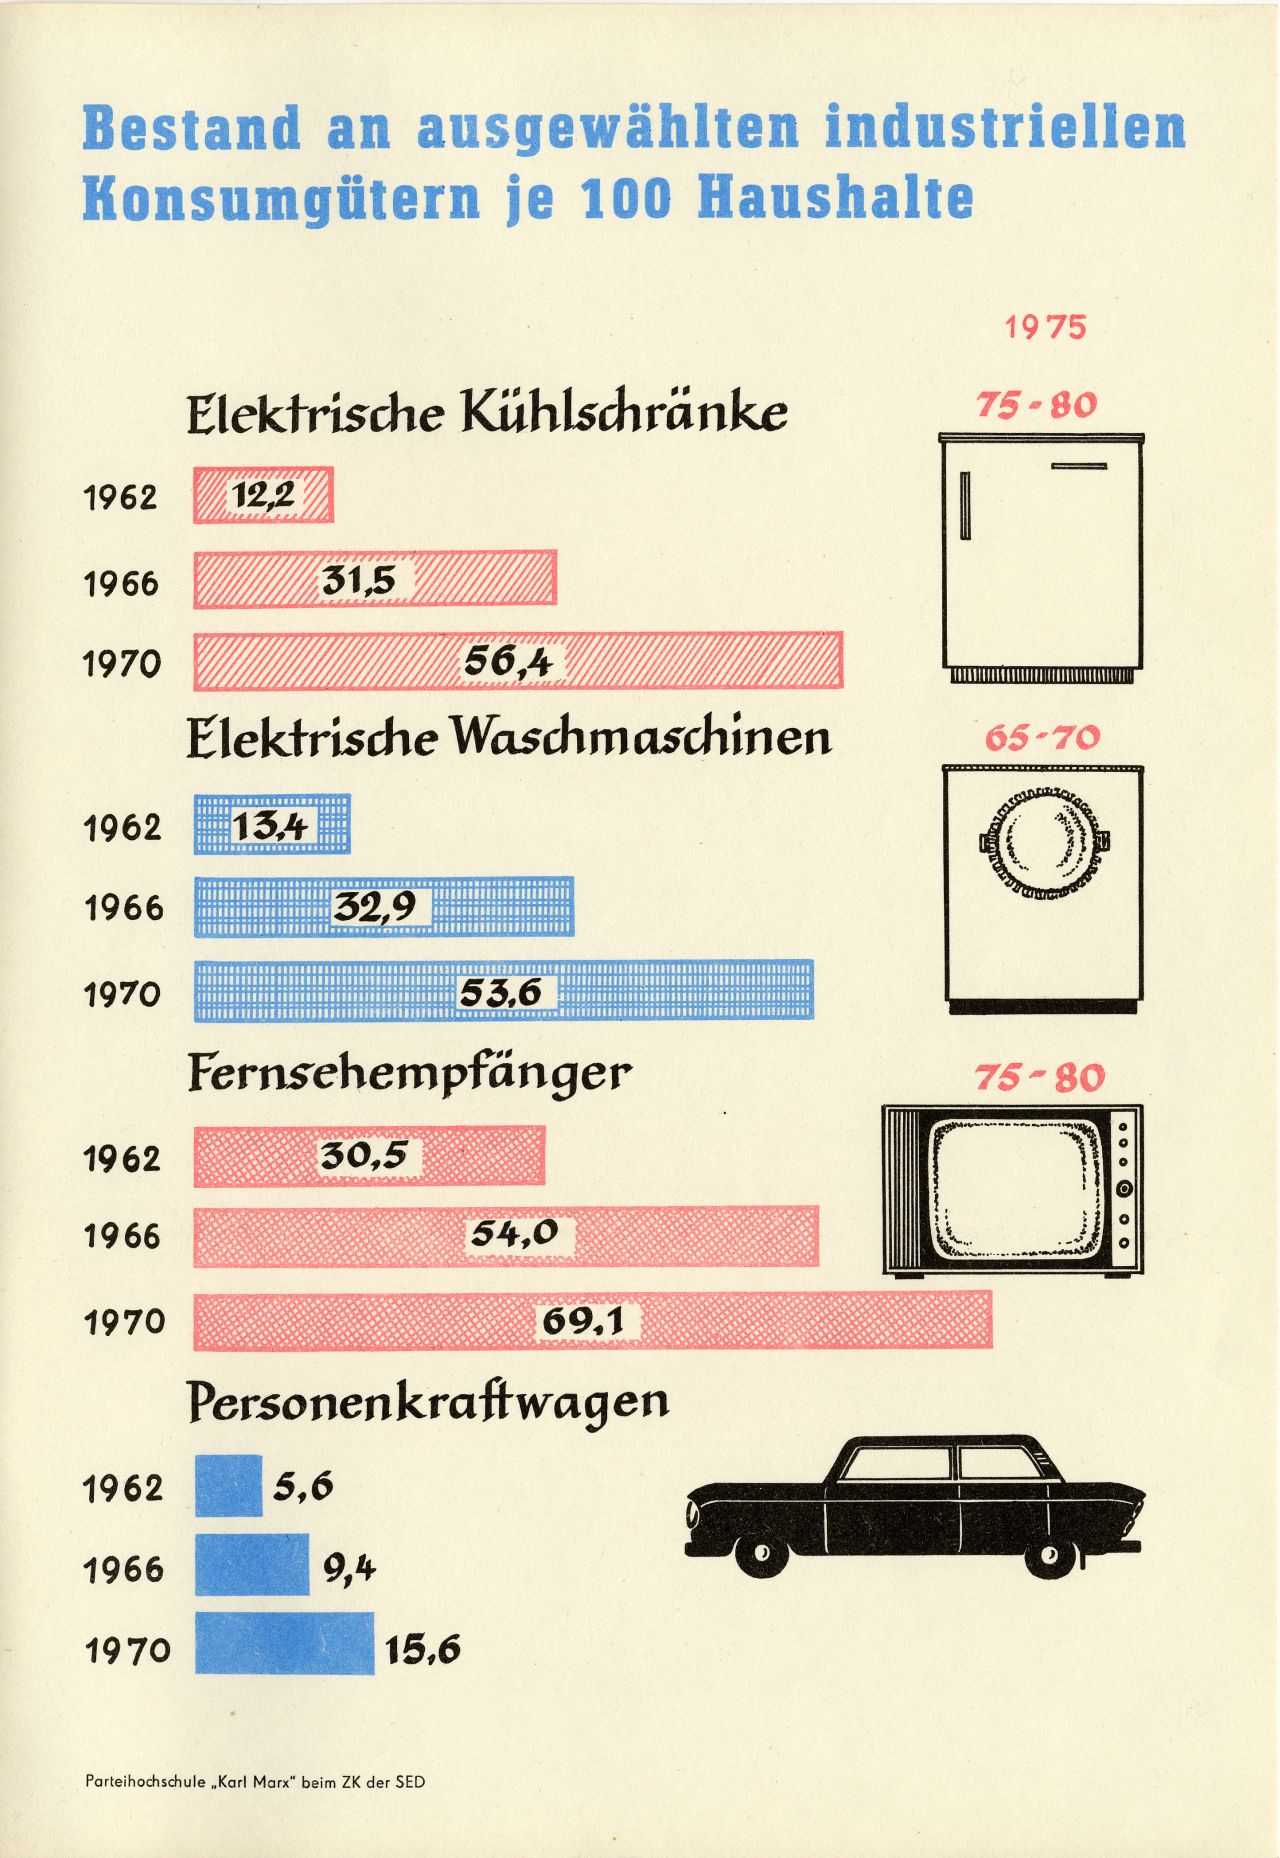 Einseitig bedrucktes Blatt, oben:  Bestand an ausgewählten industriellen Konsumgütern je 100 Haushalte, darunter Statistik über den Verkauf von Kühlschränken, Waschmaschinen, Fernsehempfängern und Personenkraftwagen von 1962 bis 1970.